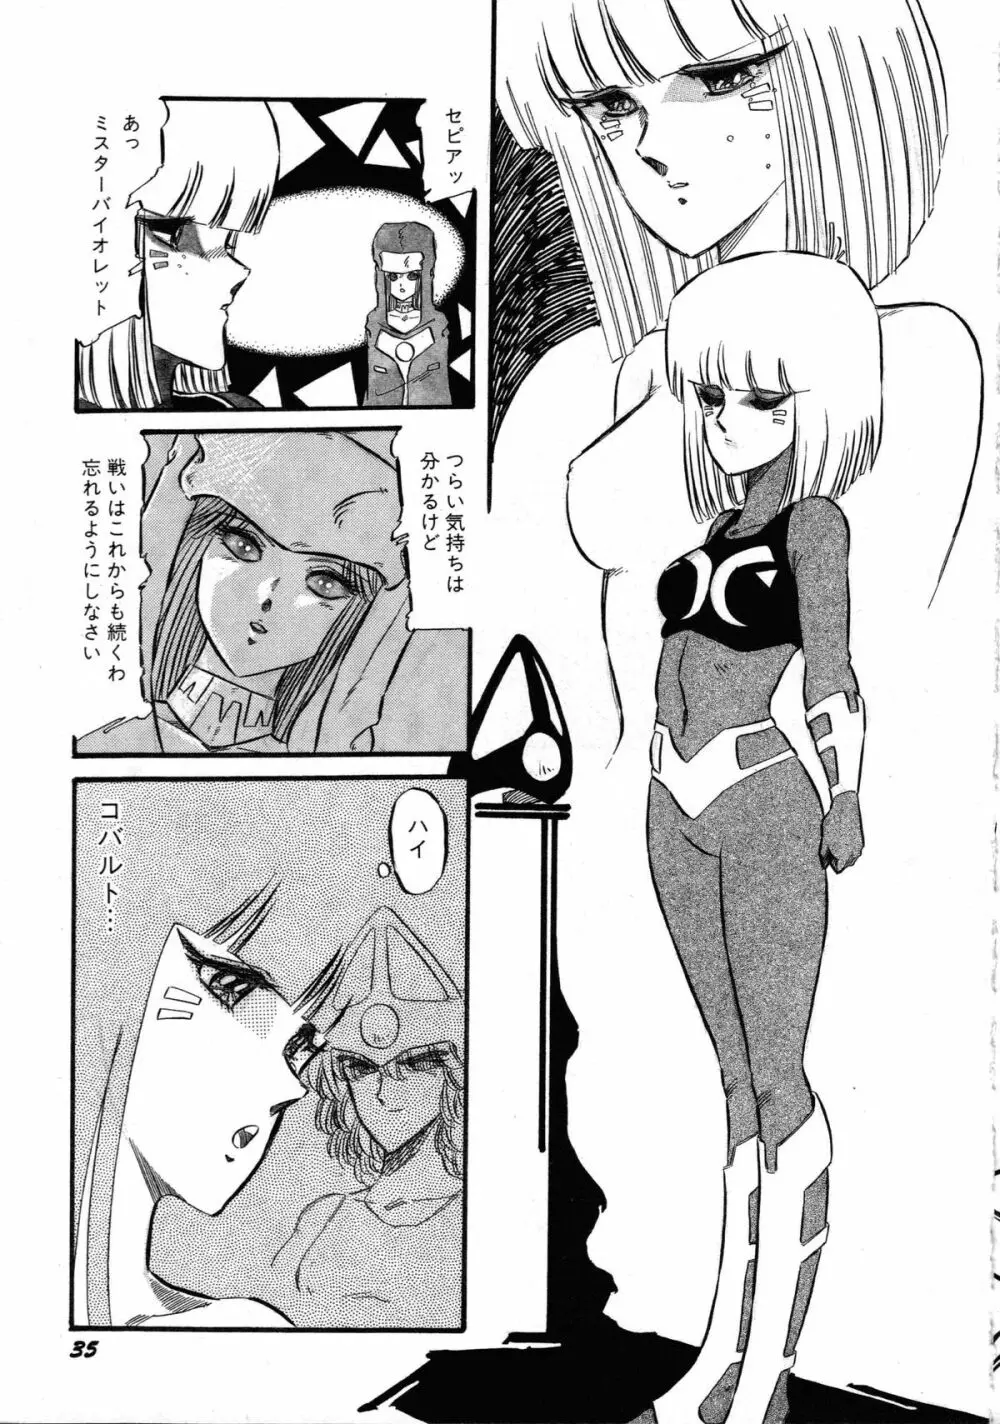 ロボット&美少女傑作選 レモン・ピープル1982-1986 37ページ